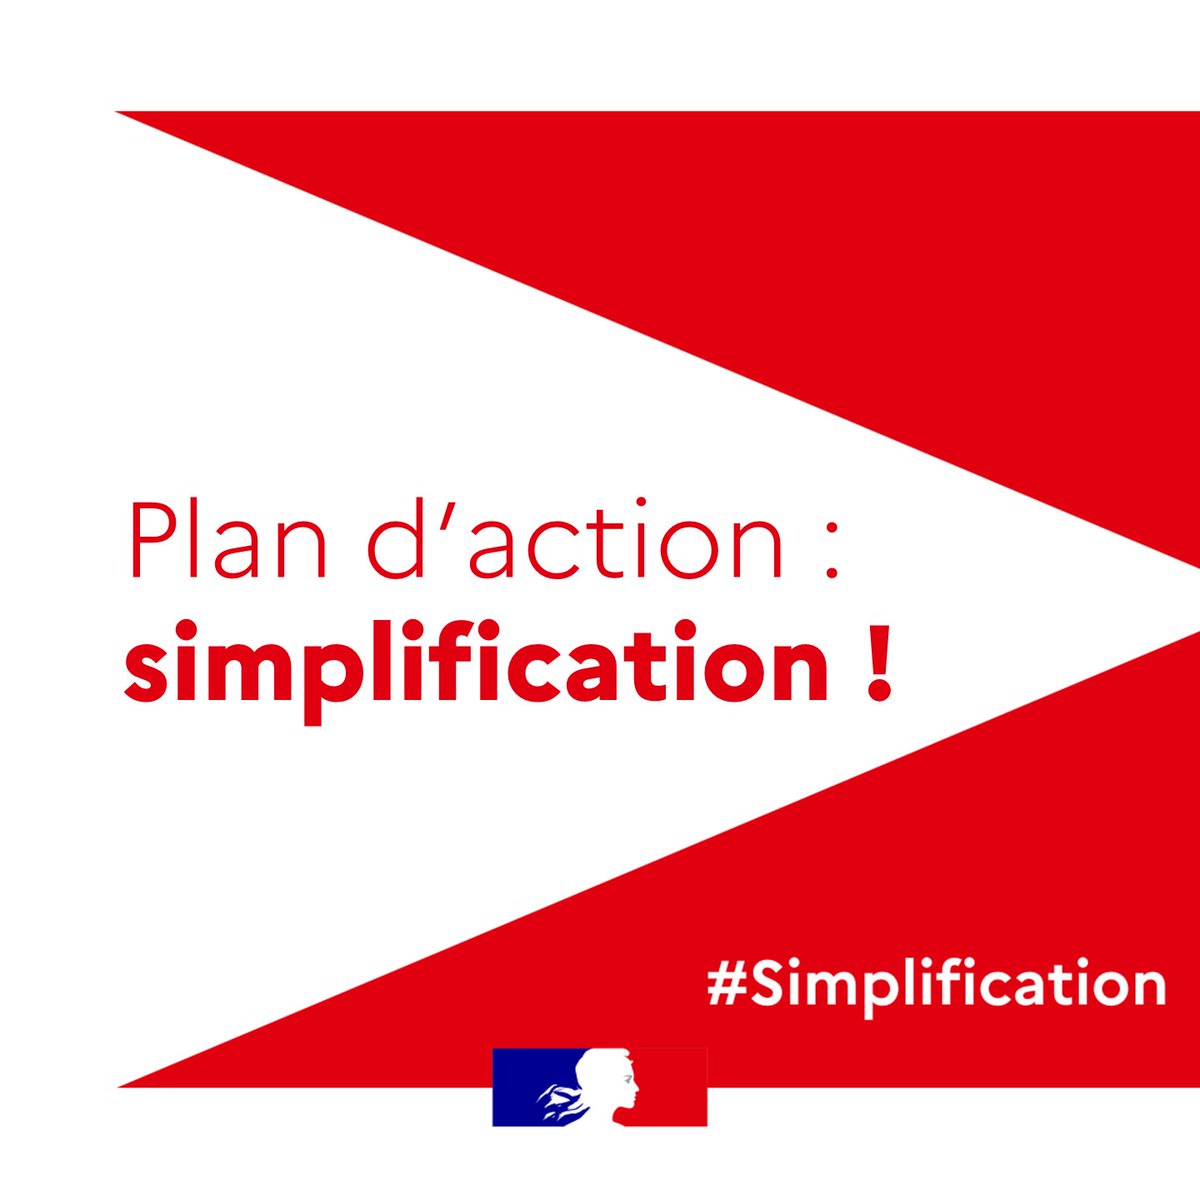 #Simplification | 📢 Plan d’action : simplification ! En novembre dernier, les ministres @BrunoLeMaire et @oliviagregoire ont mis en place les « Rencontres de la Simplification » ainsi qu’une consultation publique pour recueillir les témoignages des entrepreneurs, des…